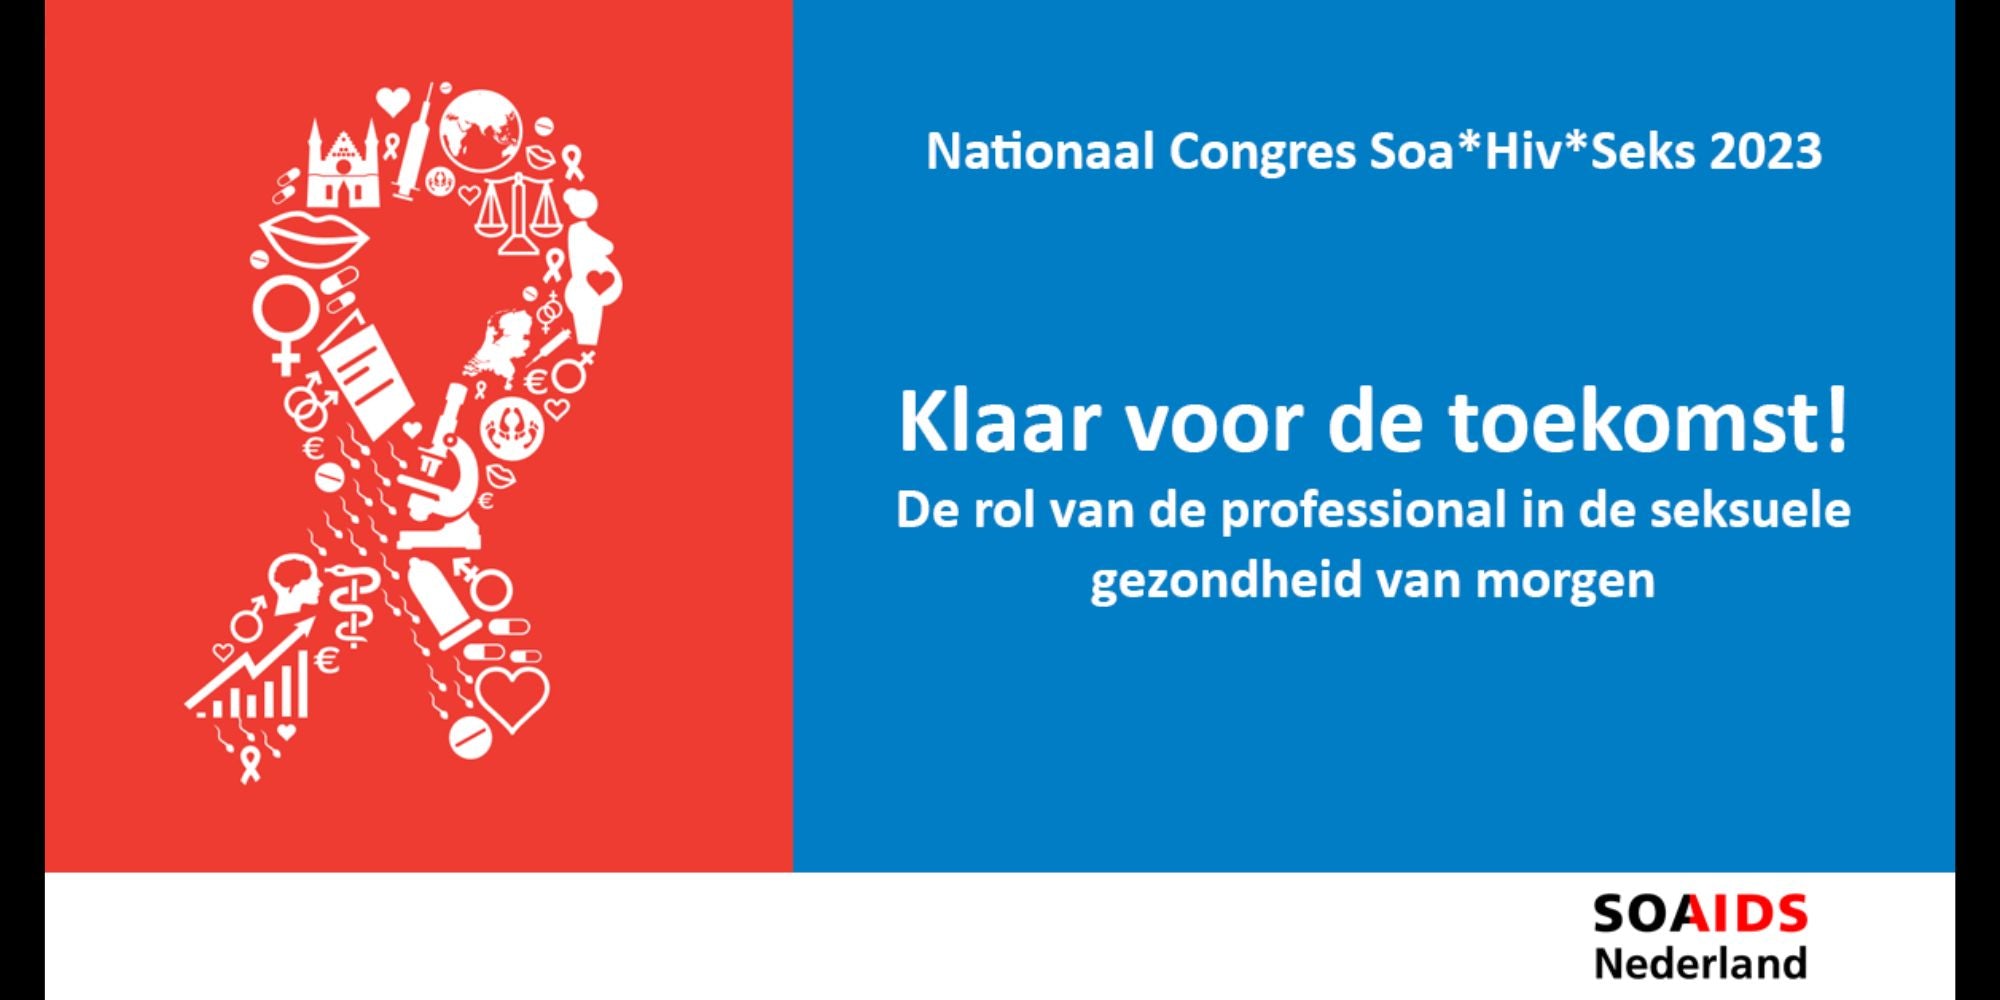 SOA AIDS congres Nederland